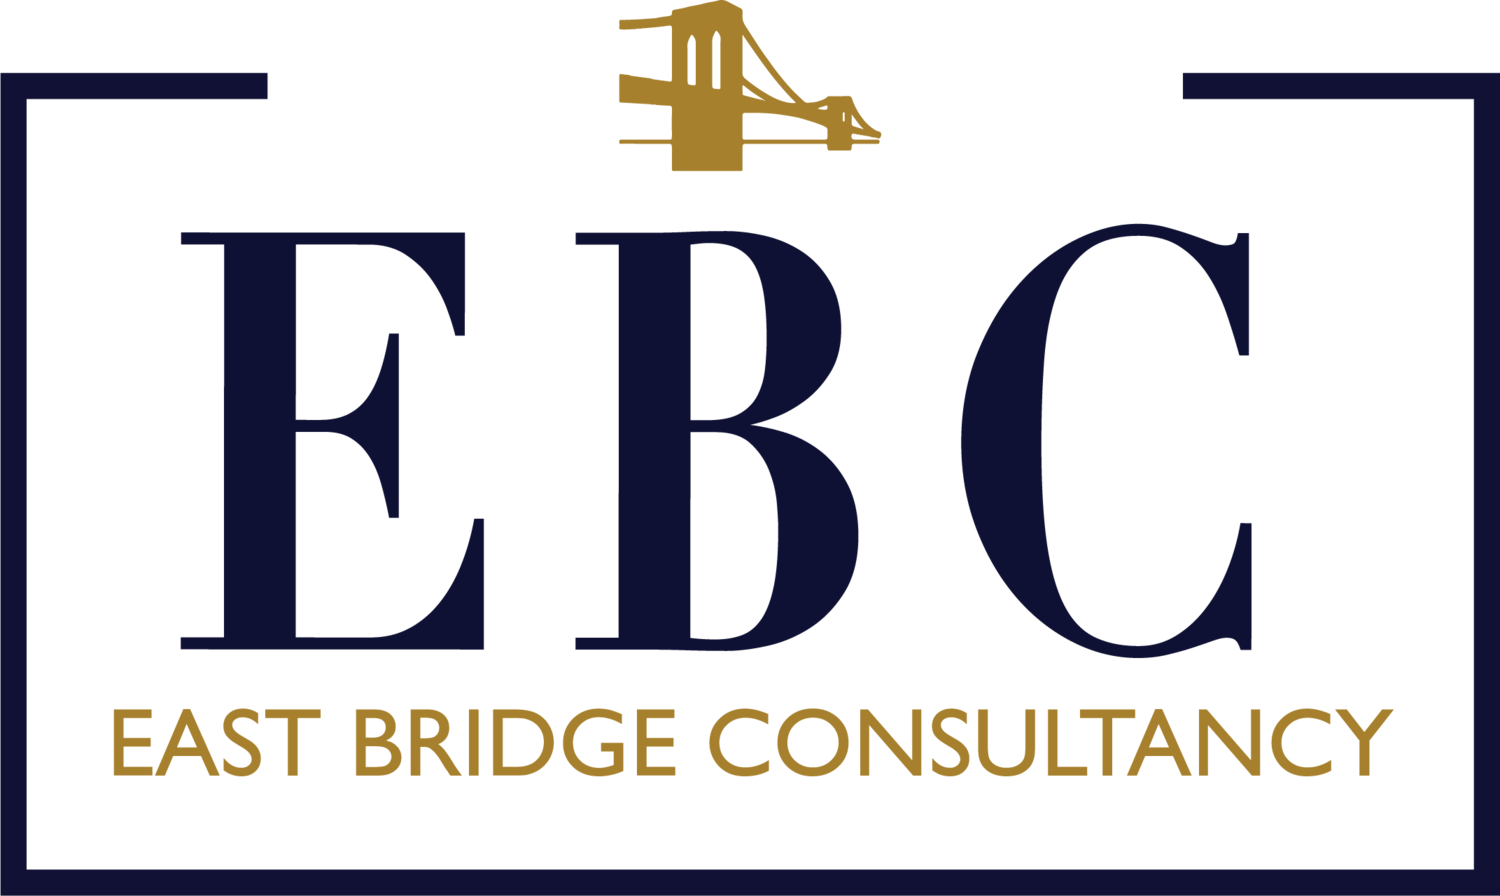 East Bridge Consultancy